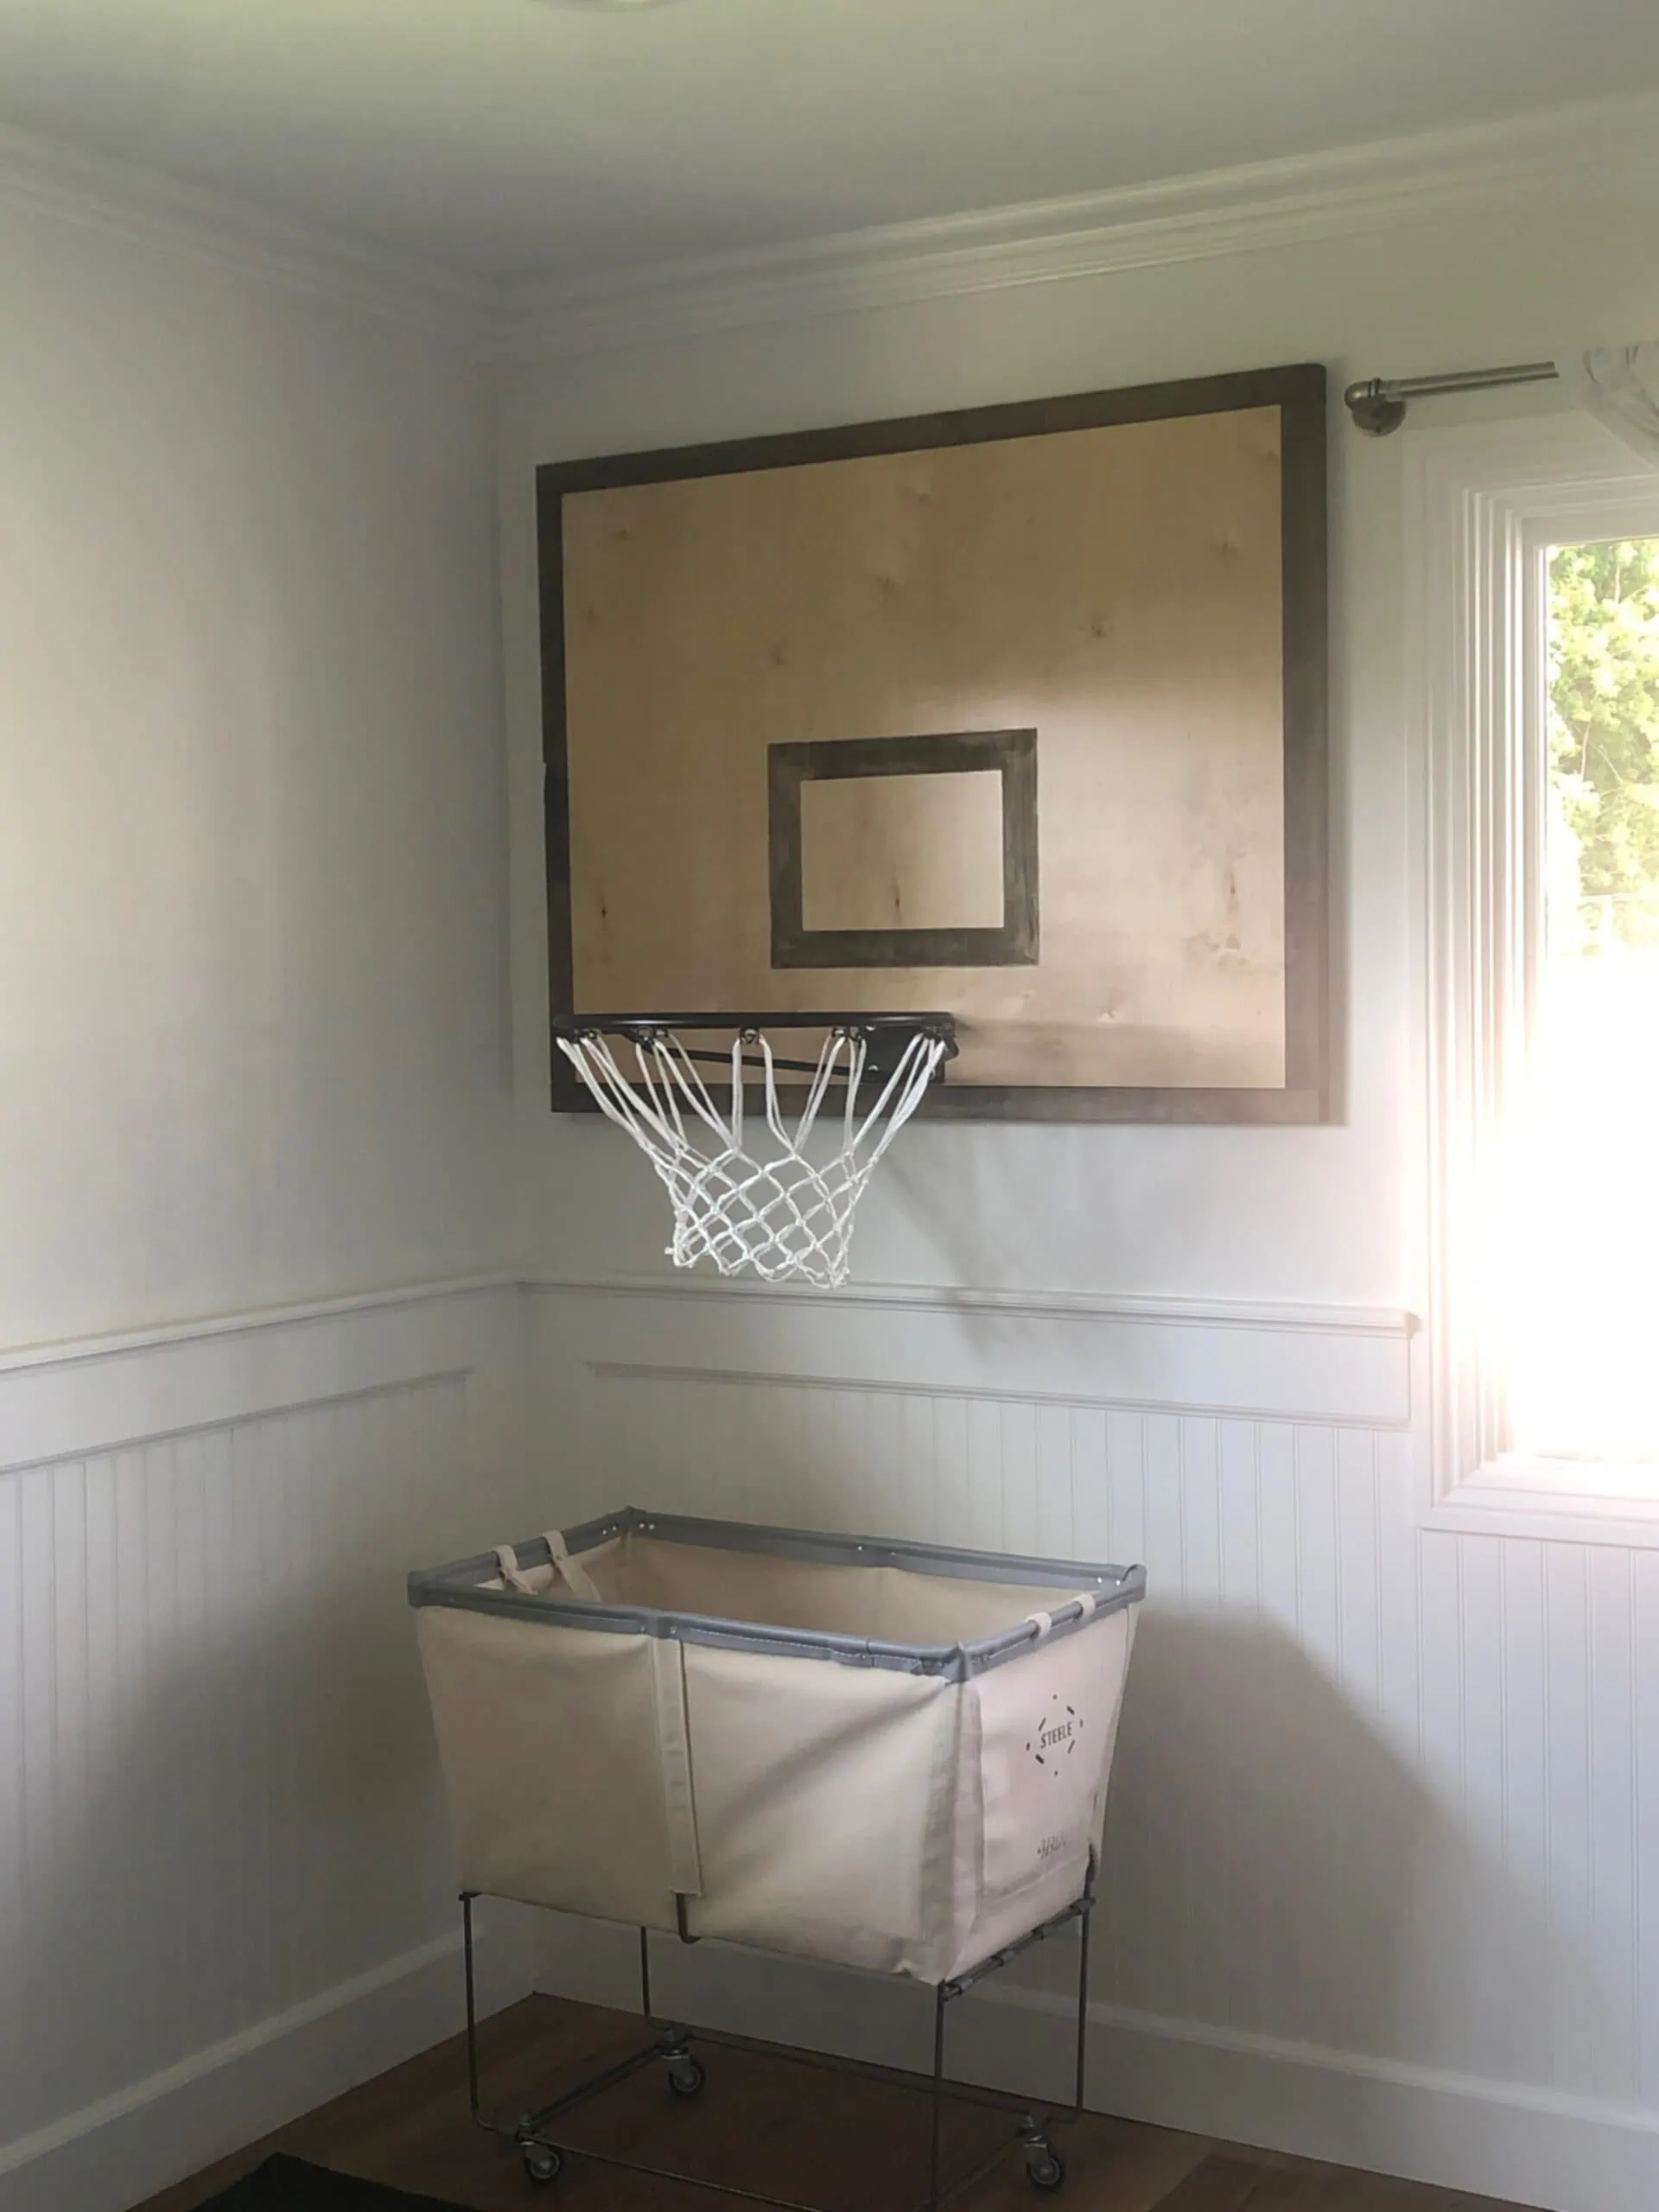 unique laundry basket idea